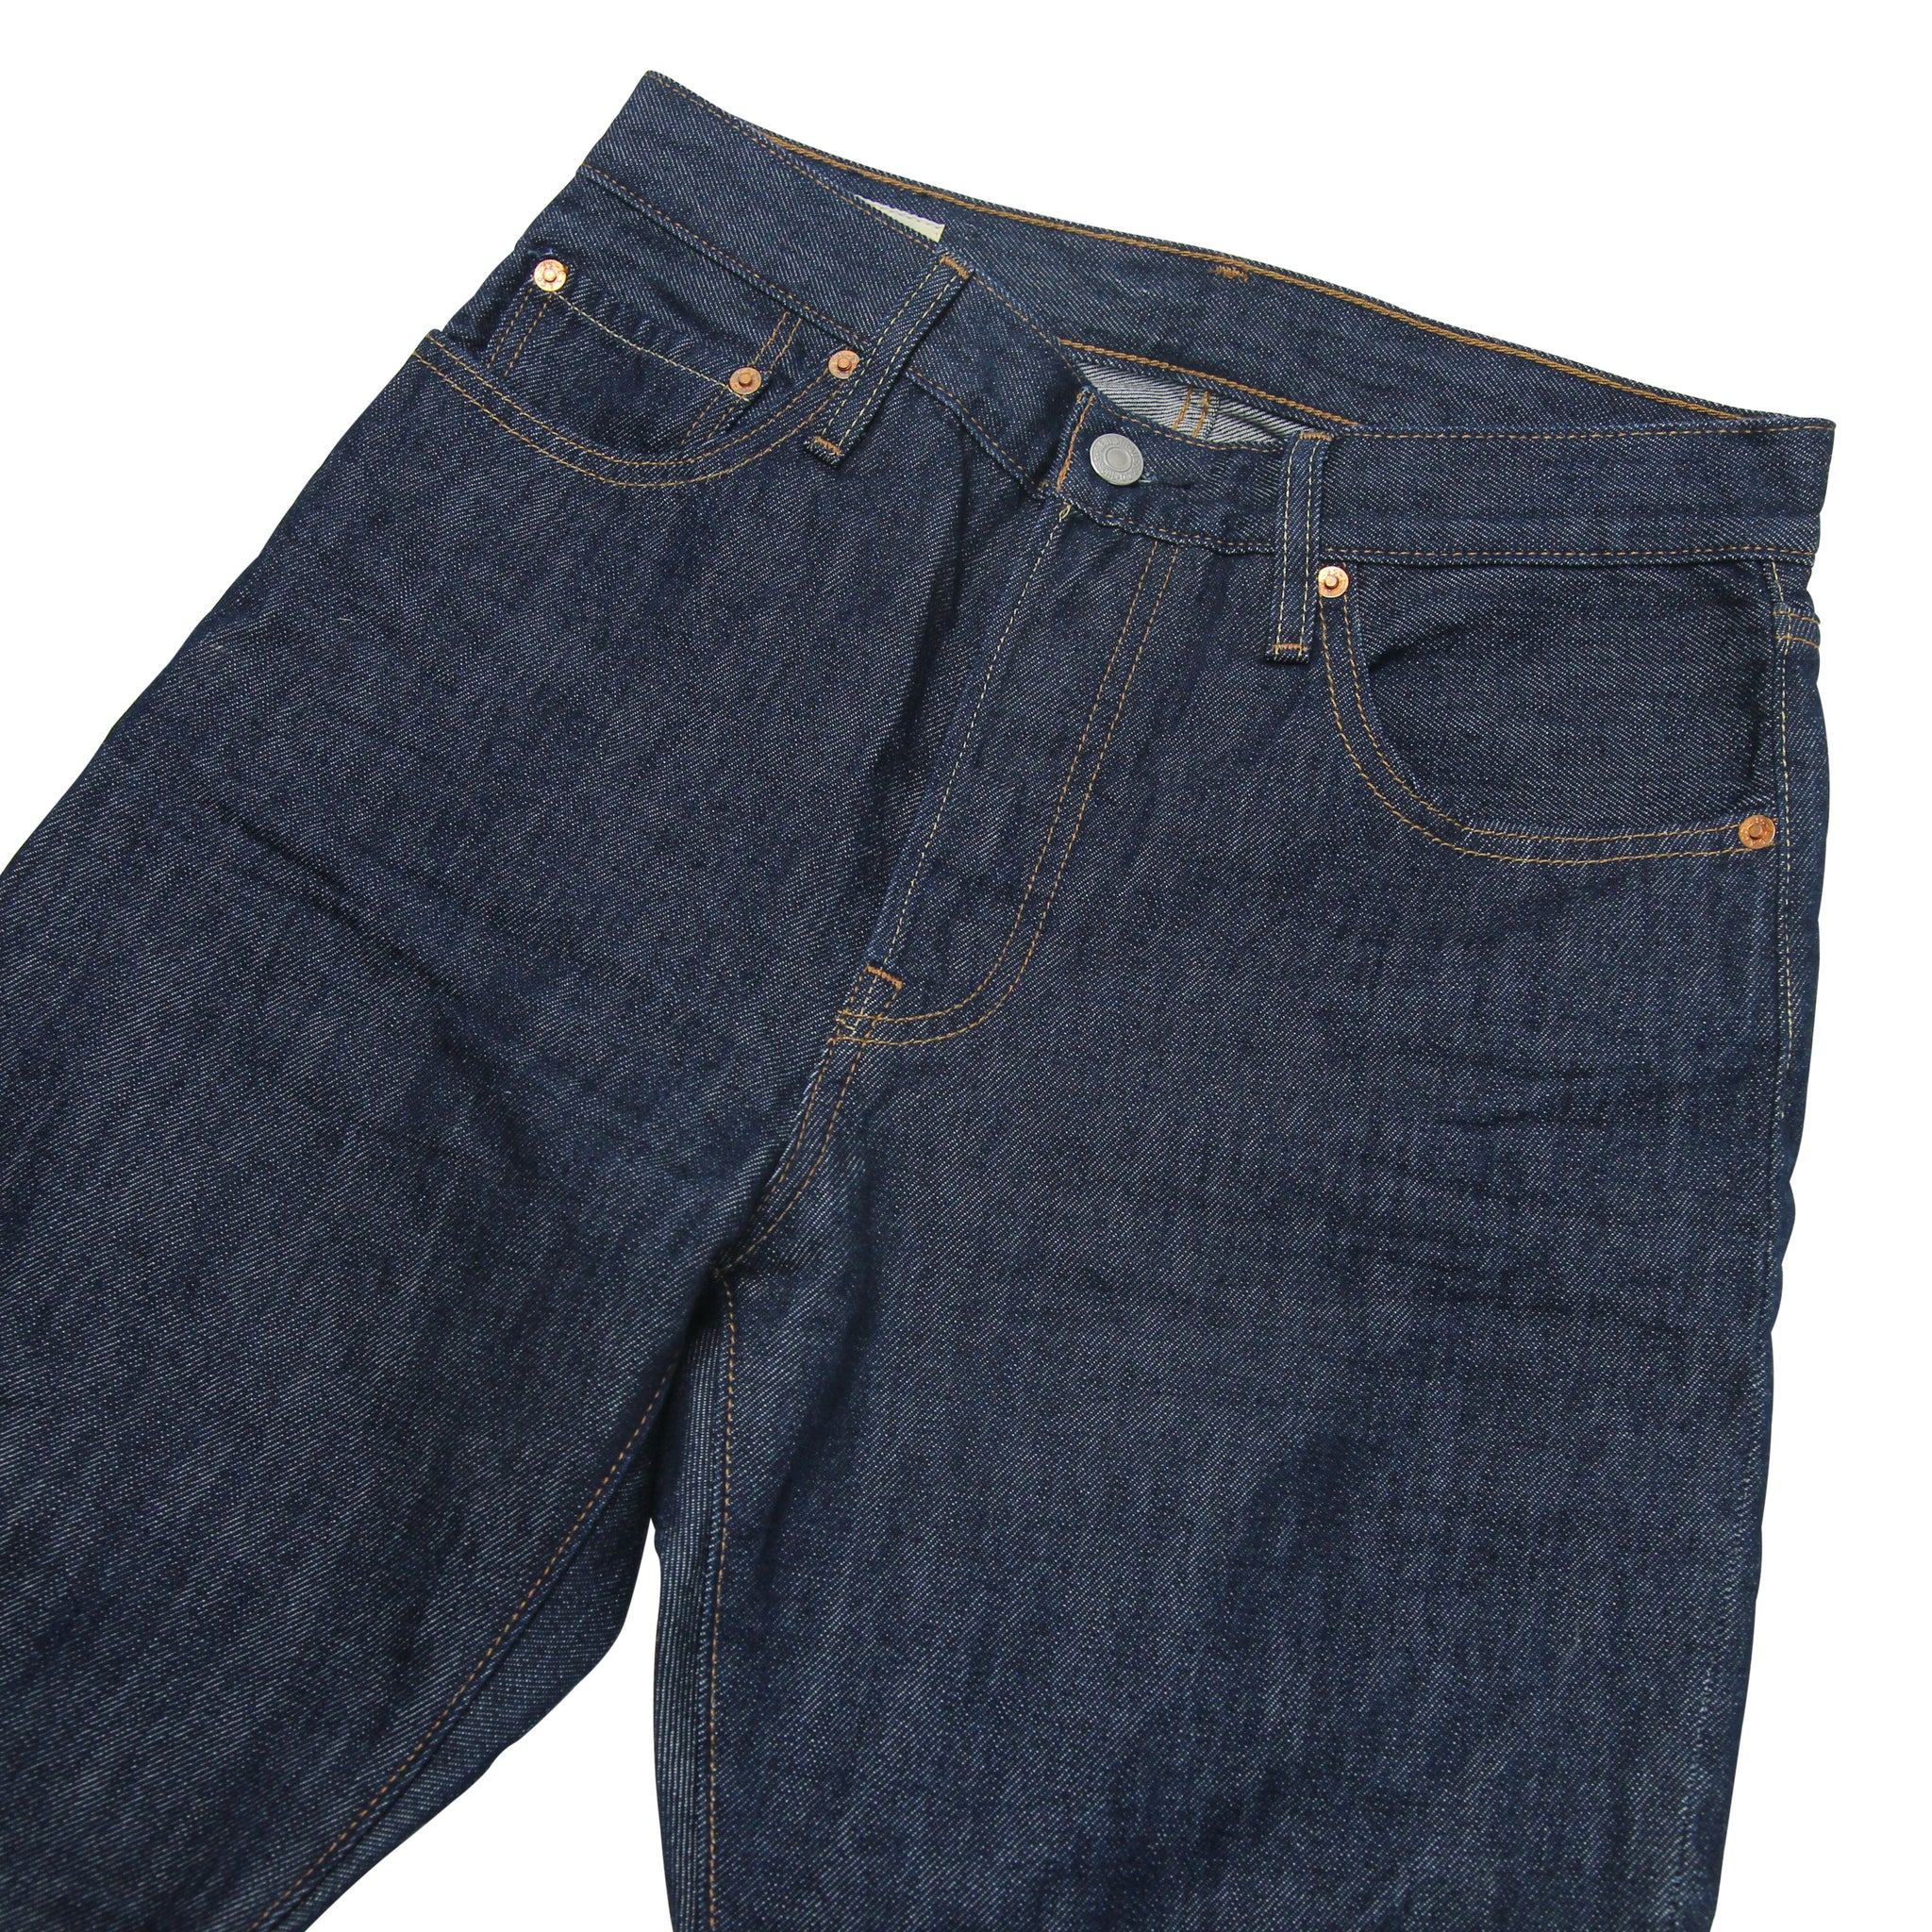 Levis Vintage Clothing 501 Big E Jeans - 28